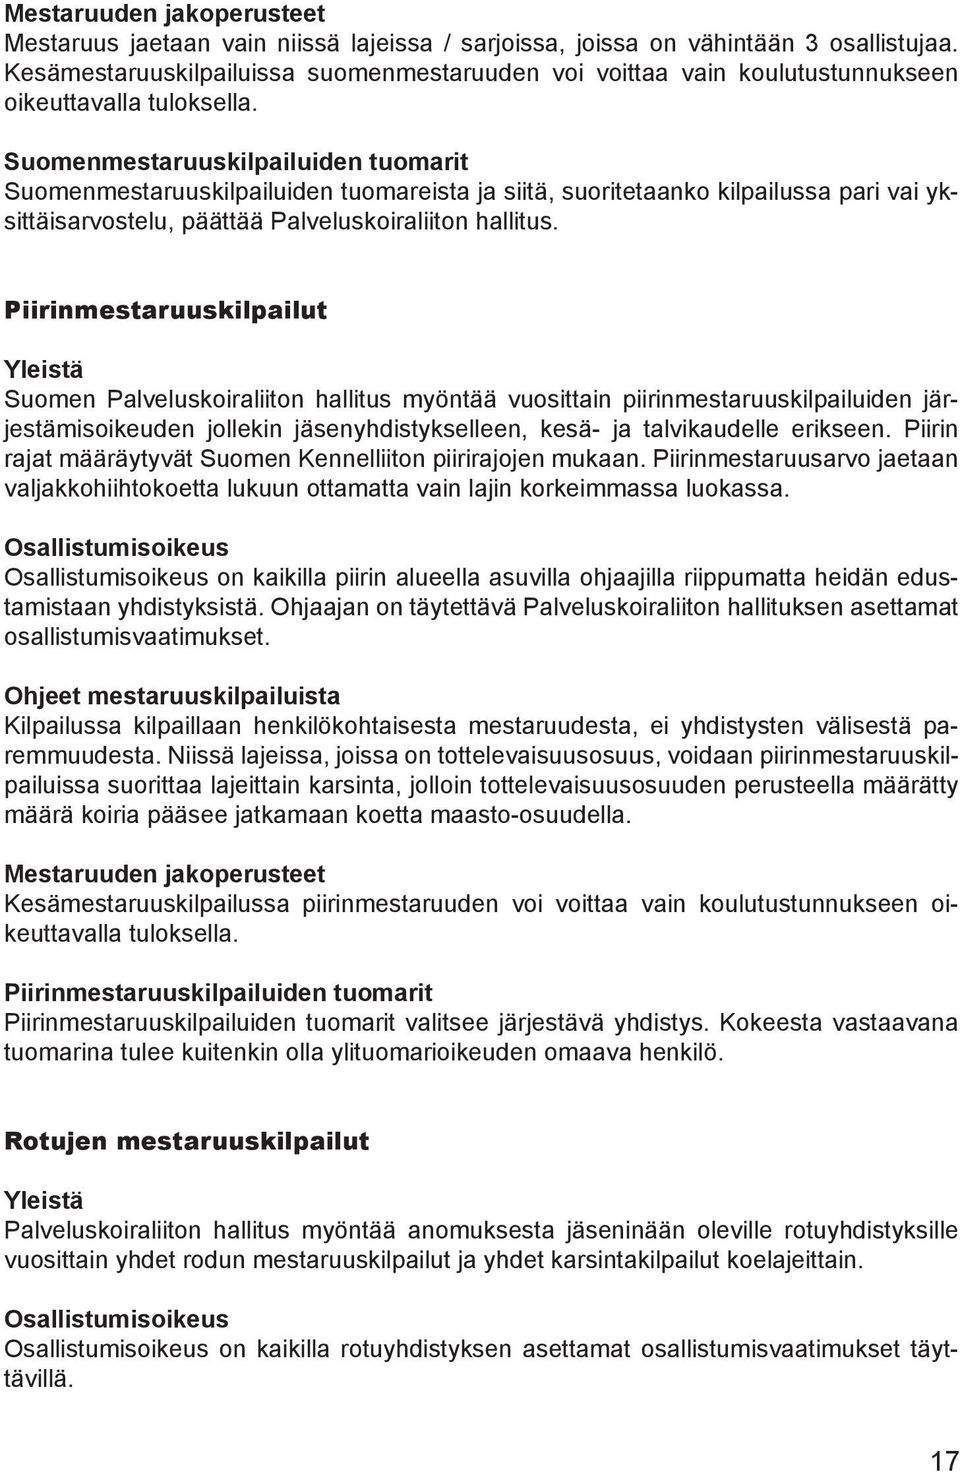 Suomenmestaruuskilpailuiden tuomarit Suomenmestaruuskilpailuiden tuomareista ja siitä, suoritetaanko kilpailussa pari vai yksittäisarvostelu, päättää Palveluskoiraliiton hallitus.